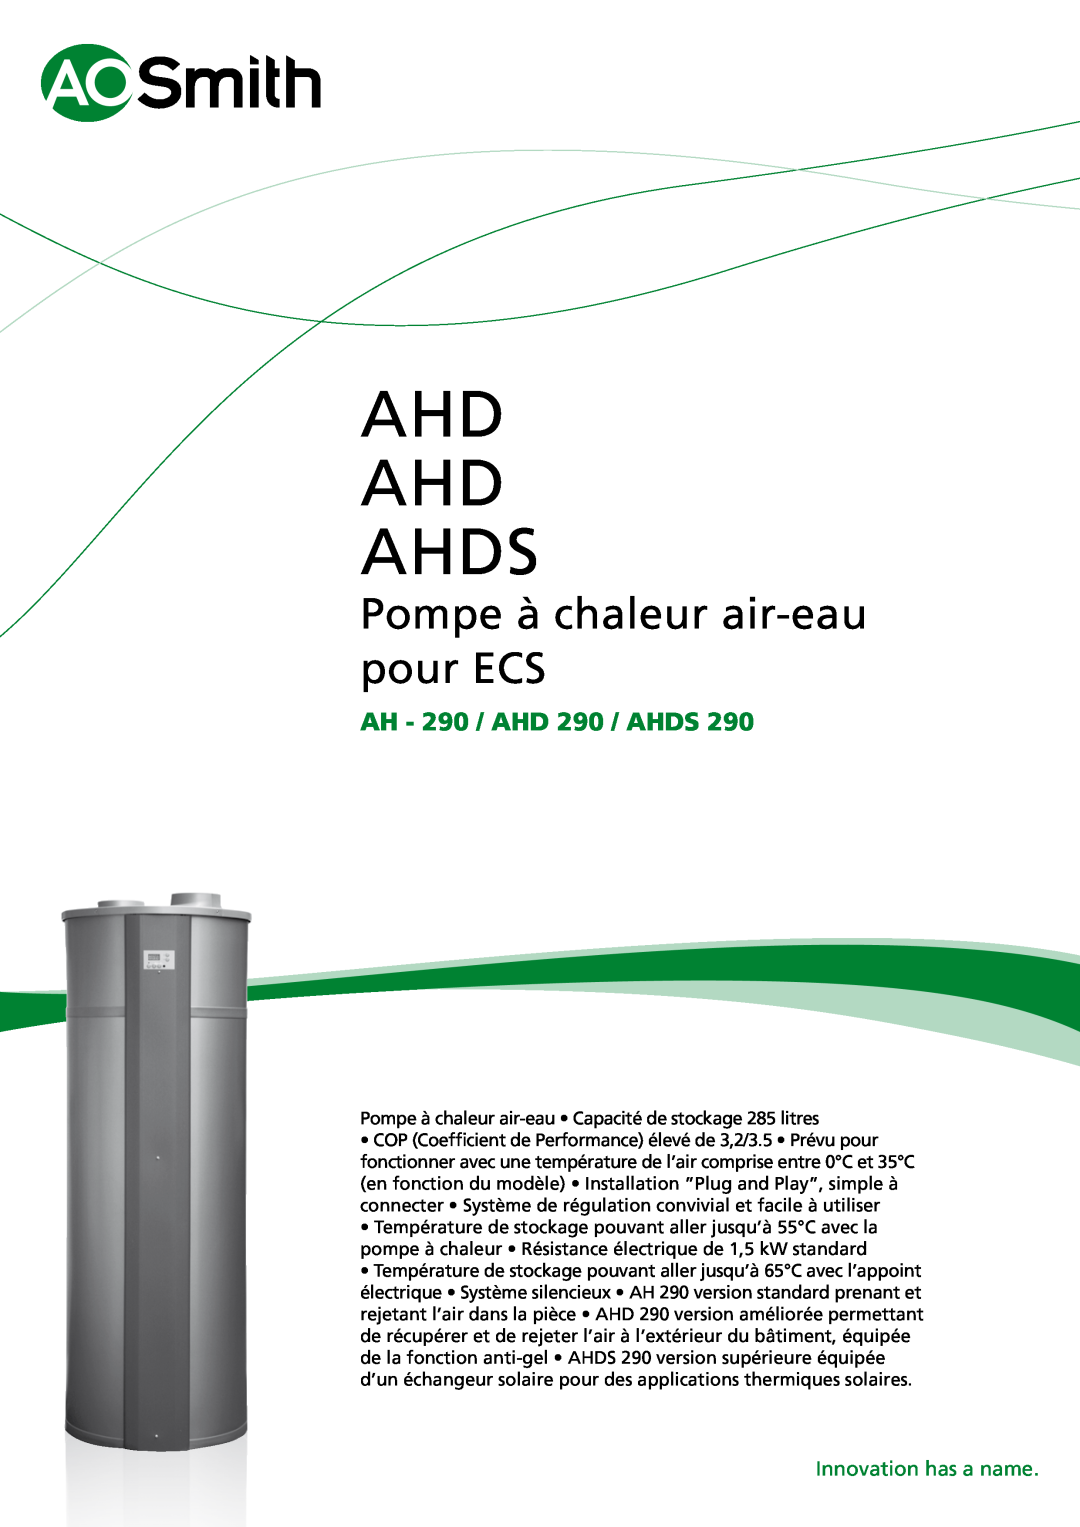 A.O. Smith manual Ahd Ahd Ahds, Pompe à chaleur air-eaupour ECS, AH - 290 / AHD 290 / AHDS, Innovation has a name 